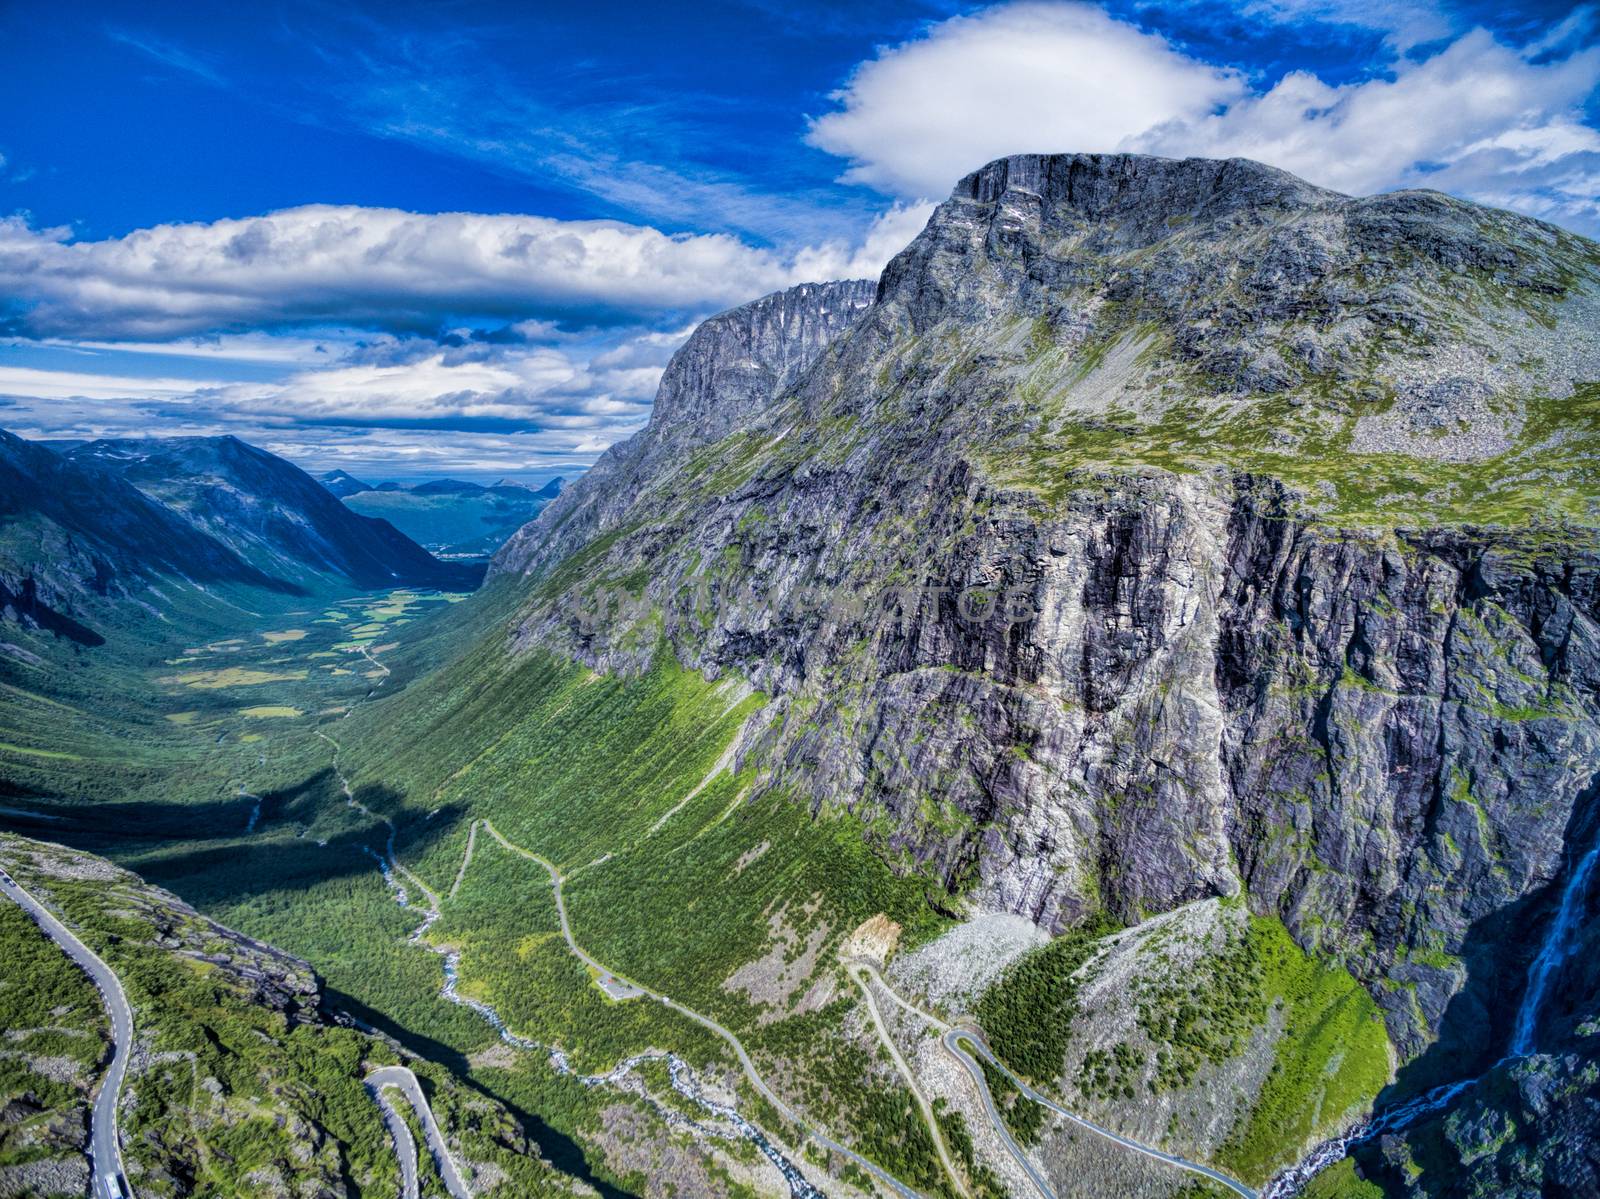 Picturesque valley around Trollstigen, famous serpentine mountain road in Norway